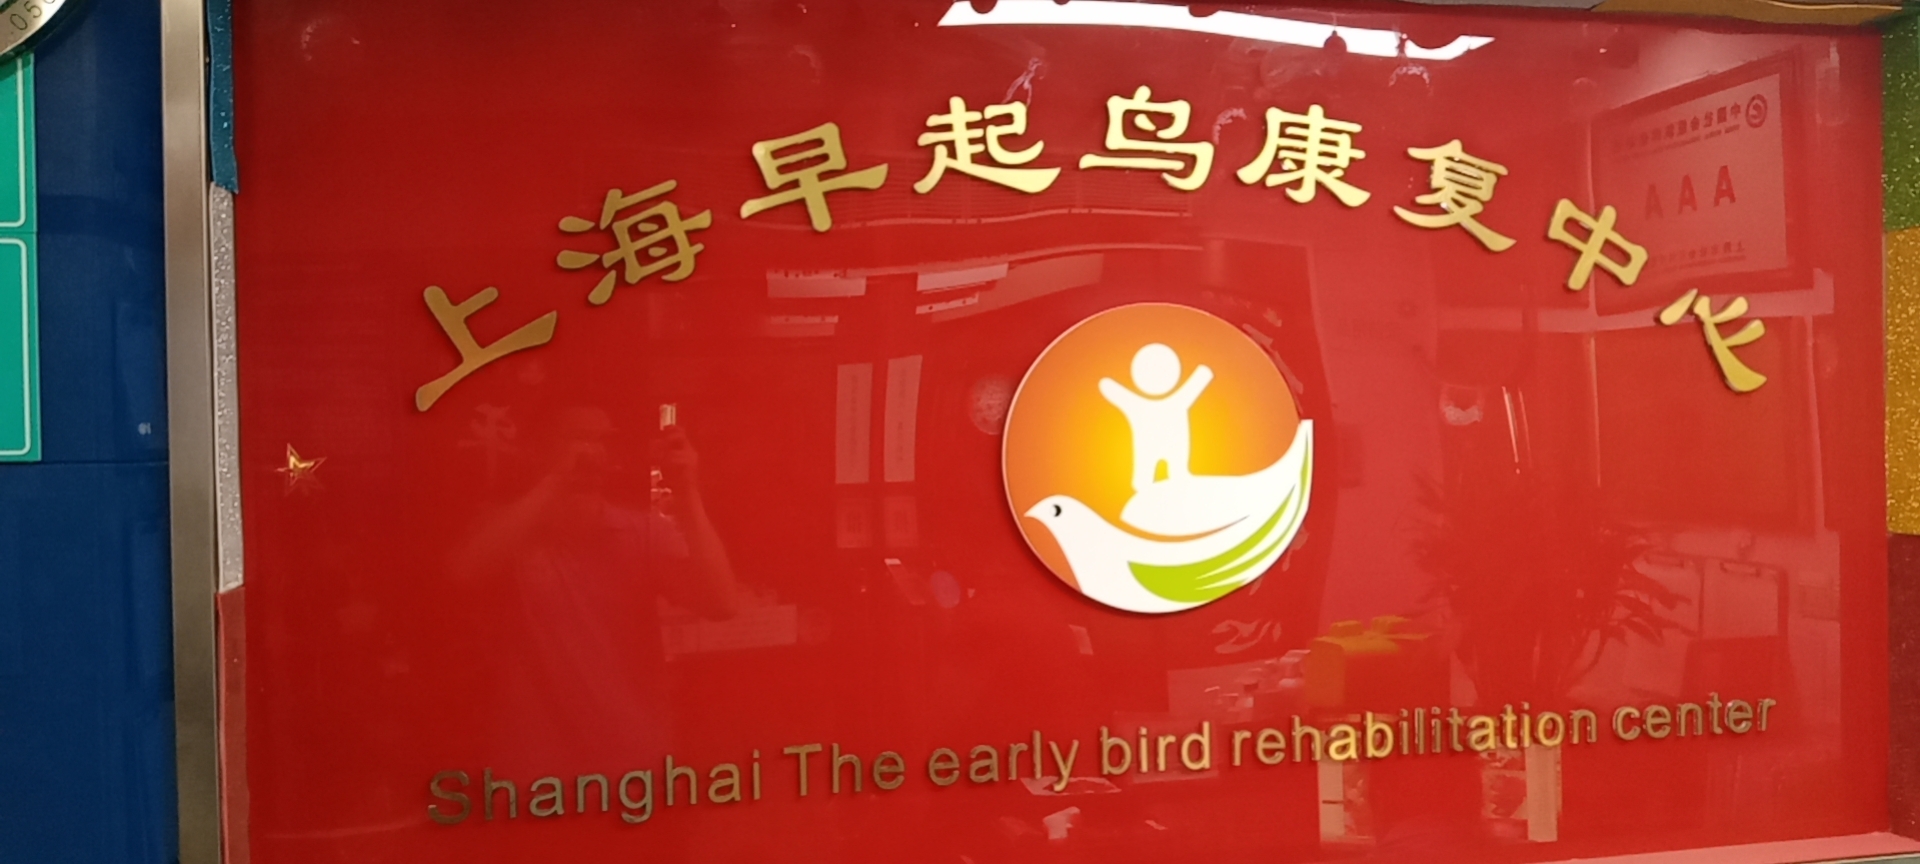 上海早起鸟康复中心